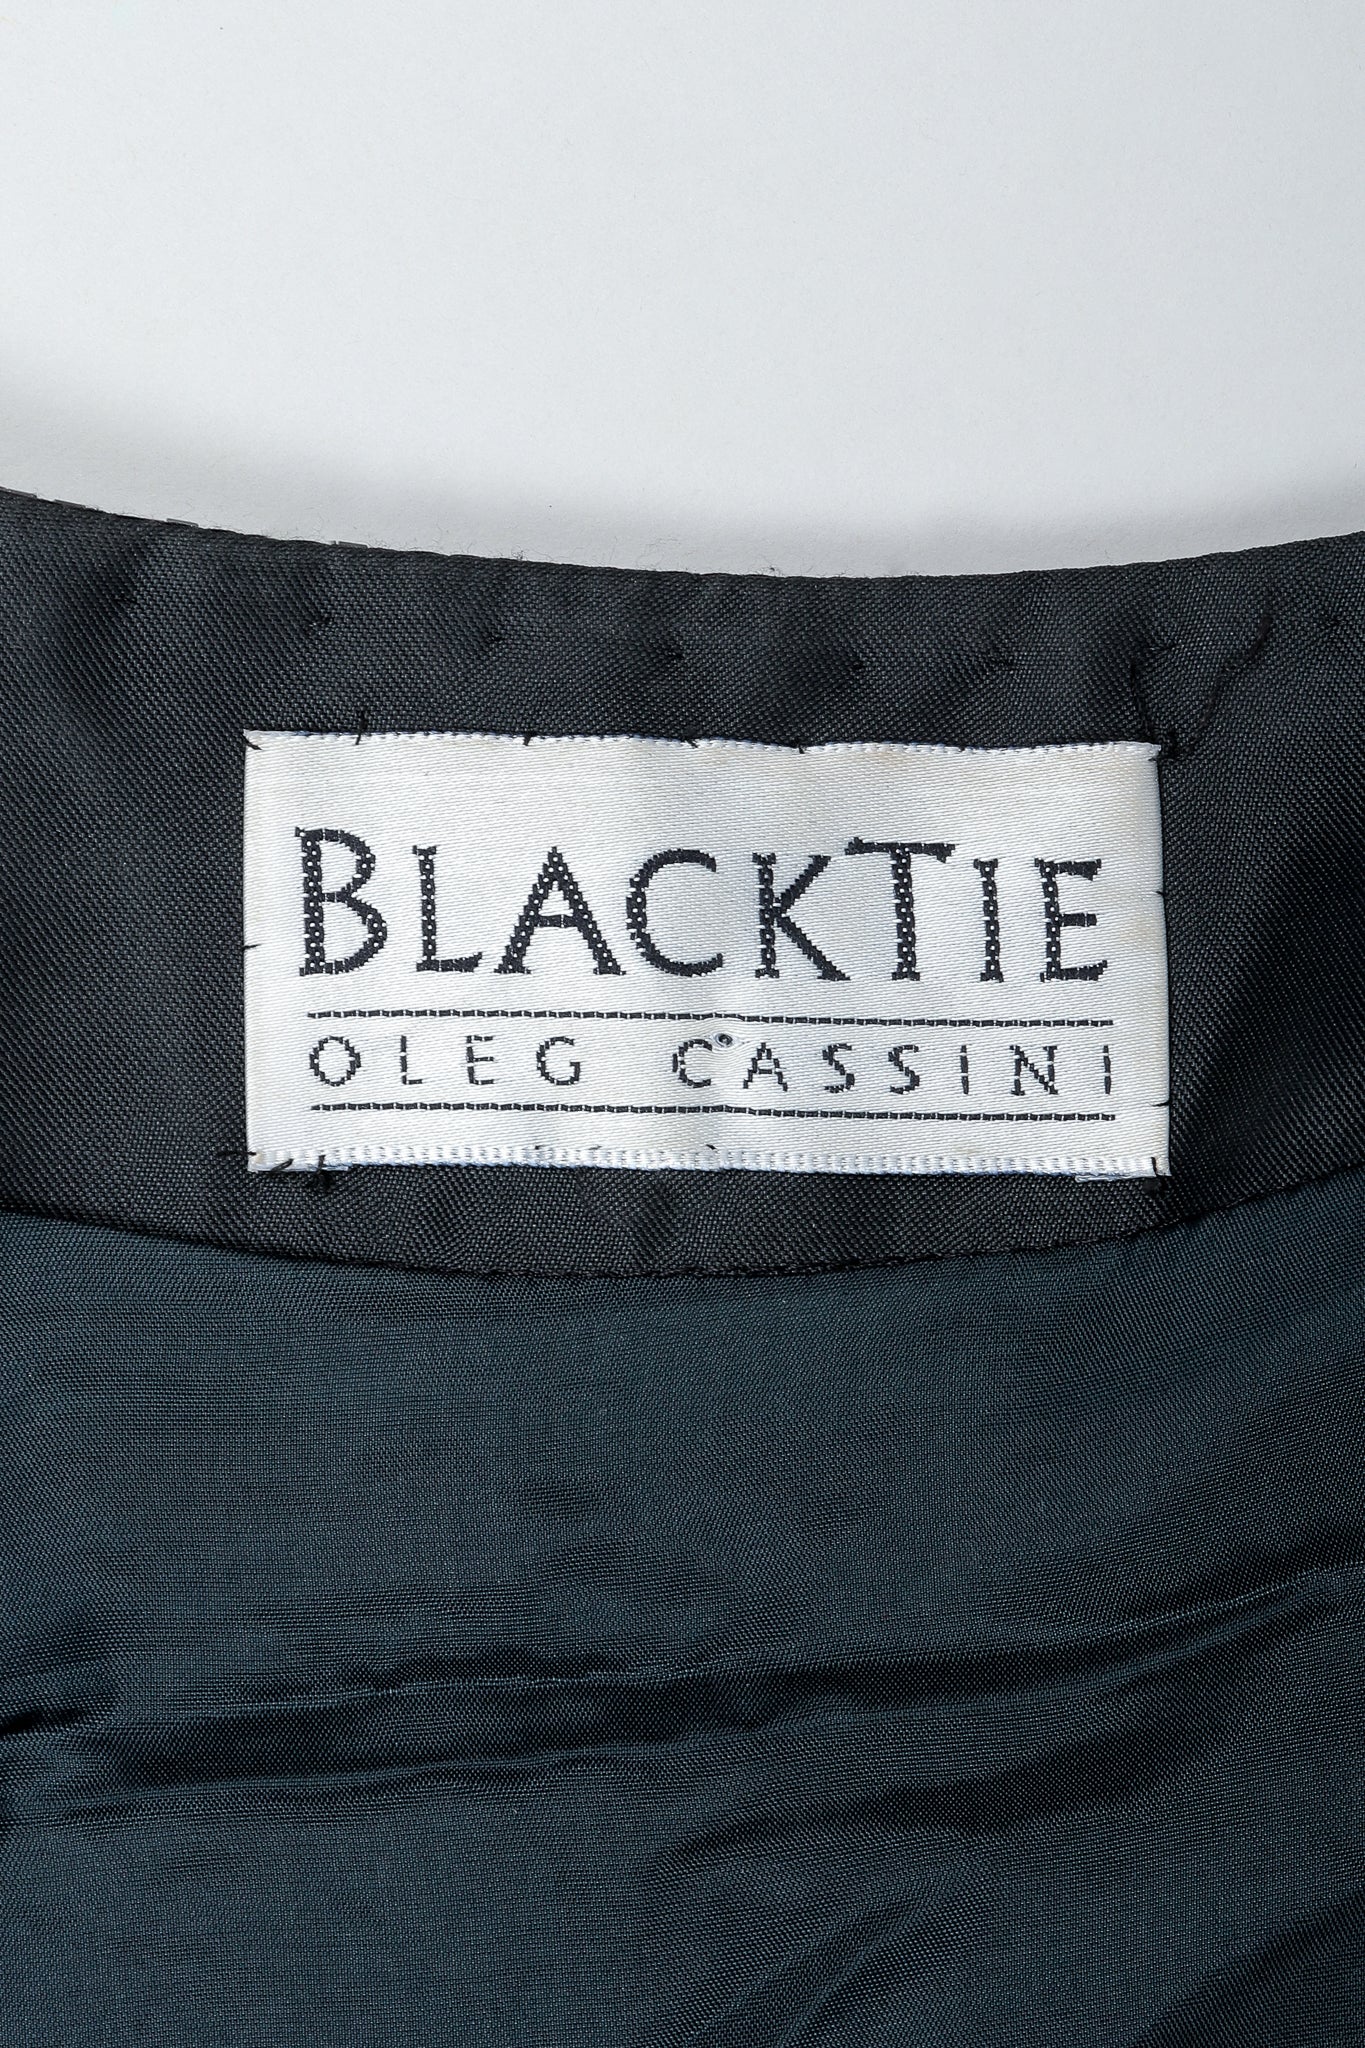 Vintage Oleg Cassini Black Tie Label on black fabric